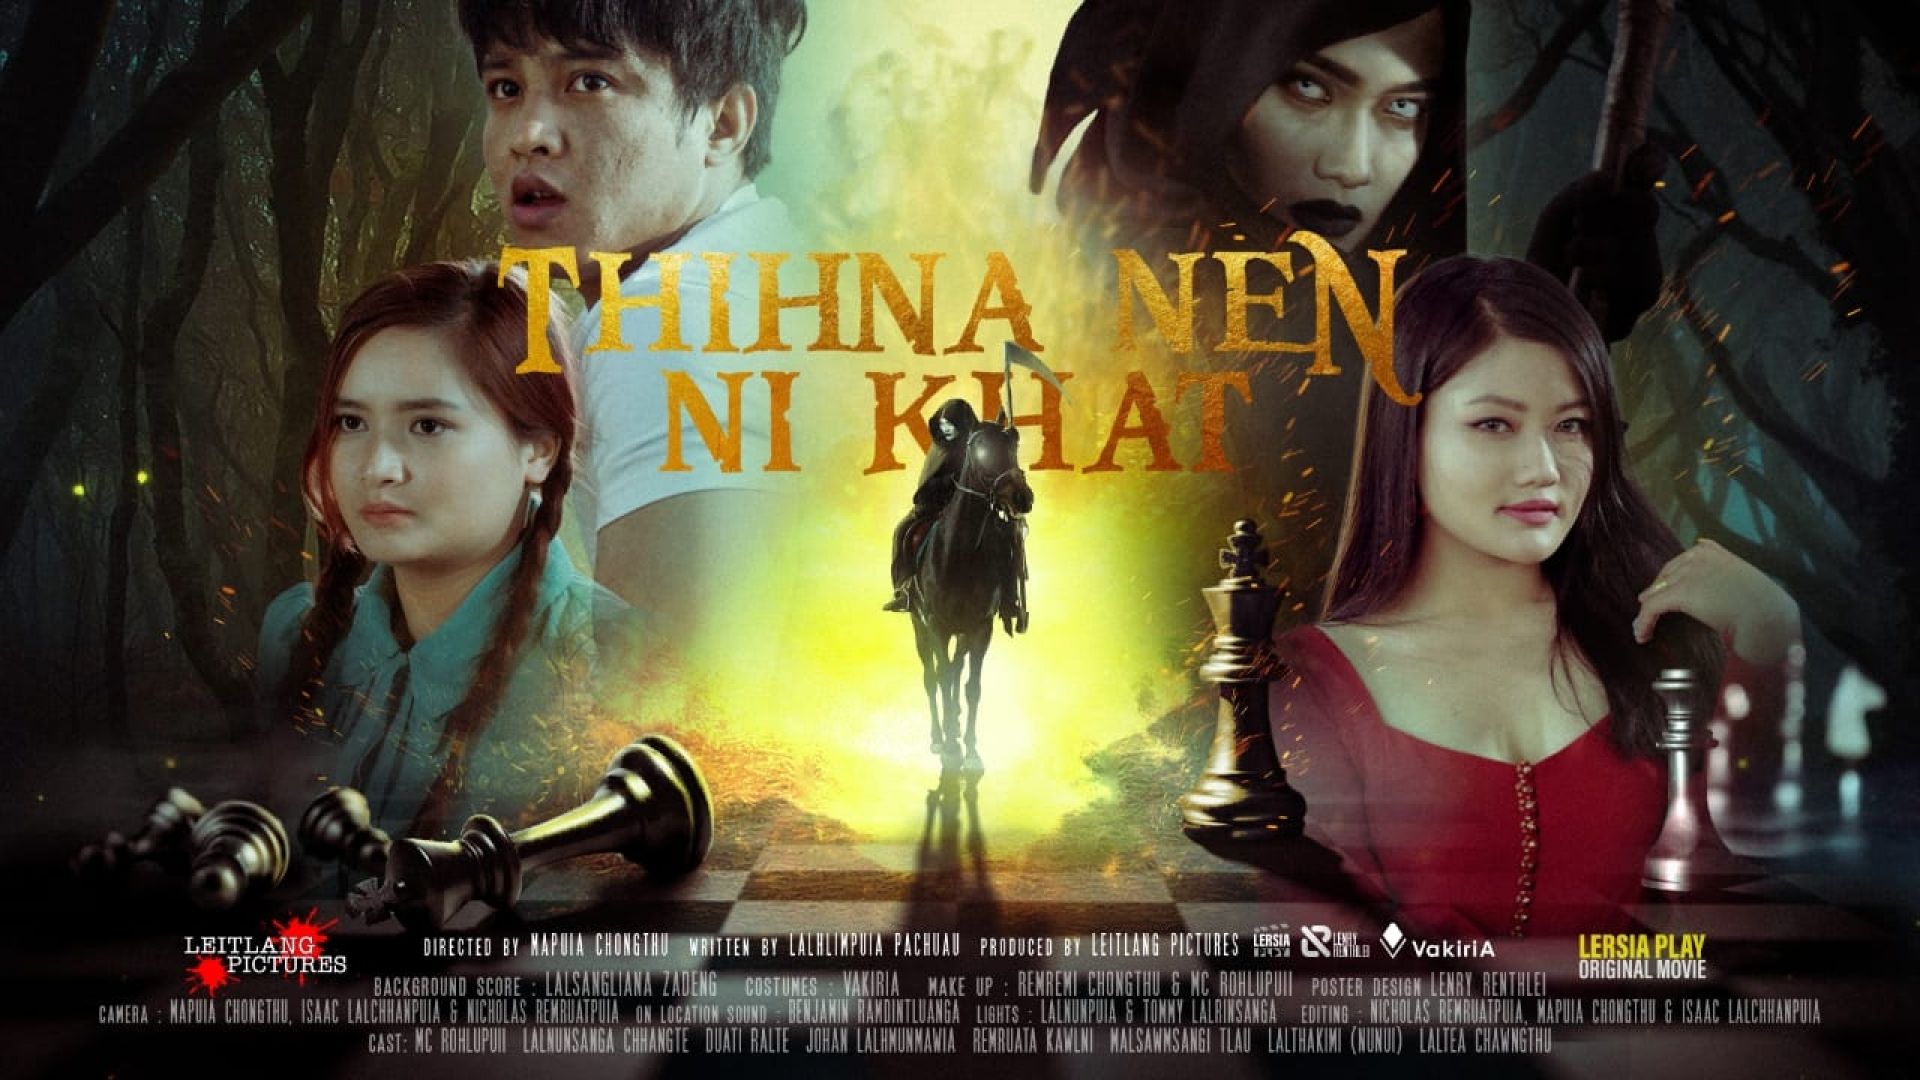 Thihna Nen Nikhat poster